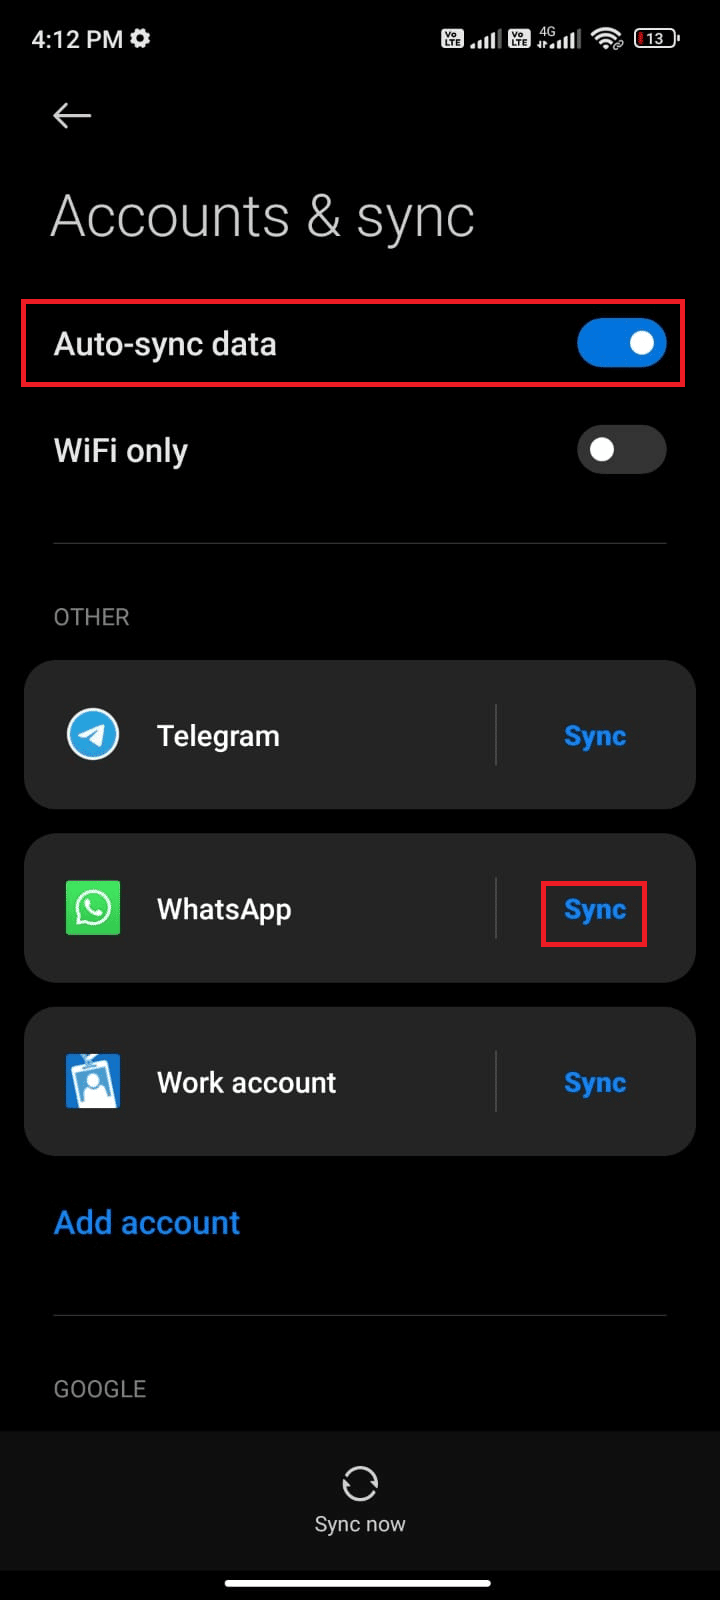 нажмите на опцию синхронизации рядом с WhatsApp